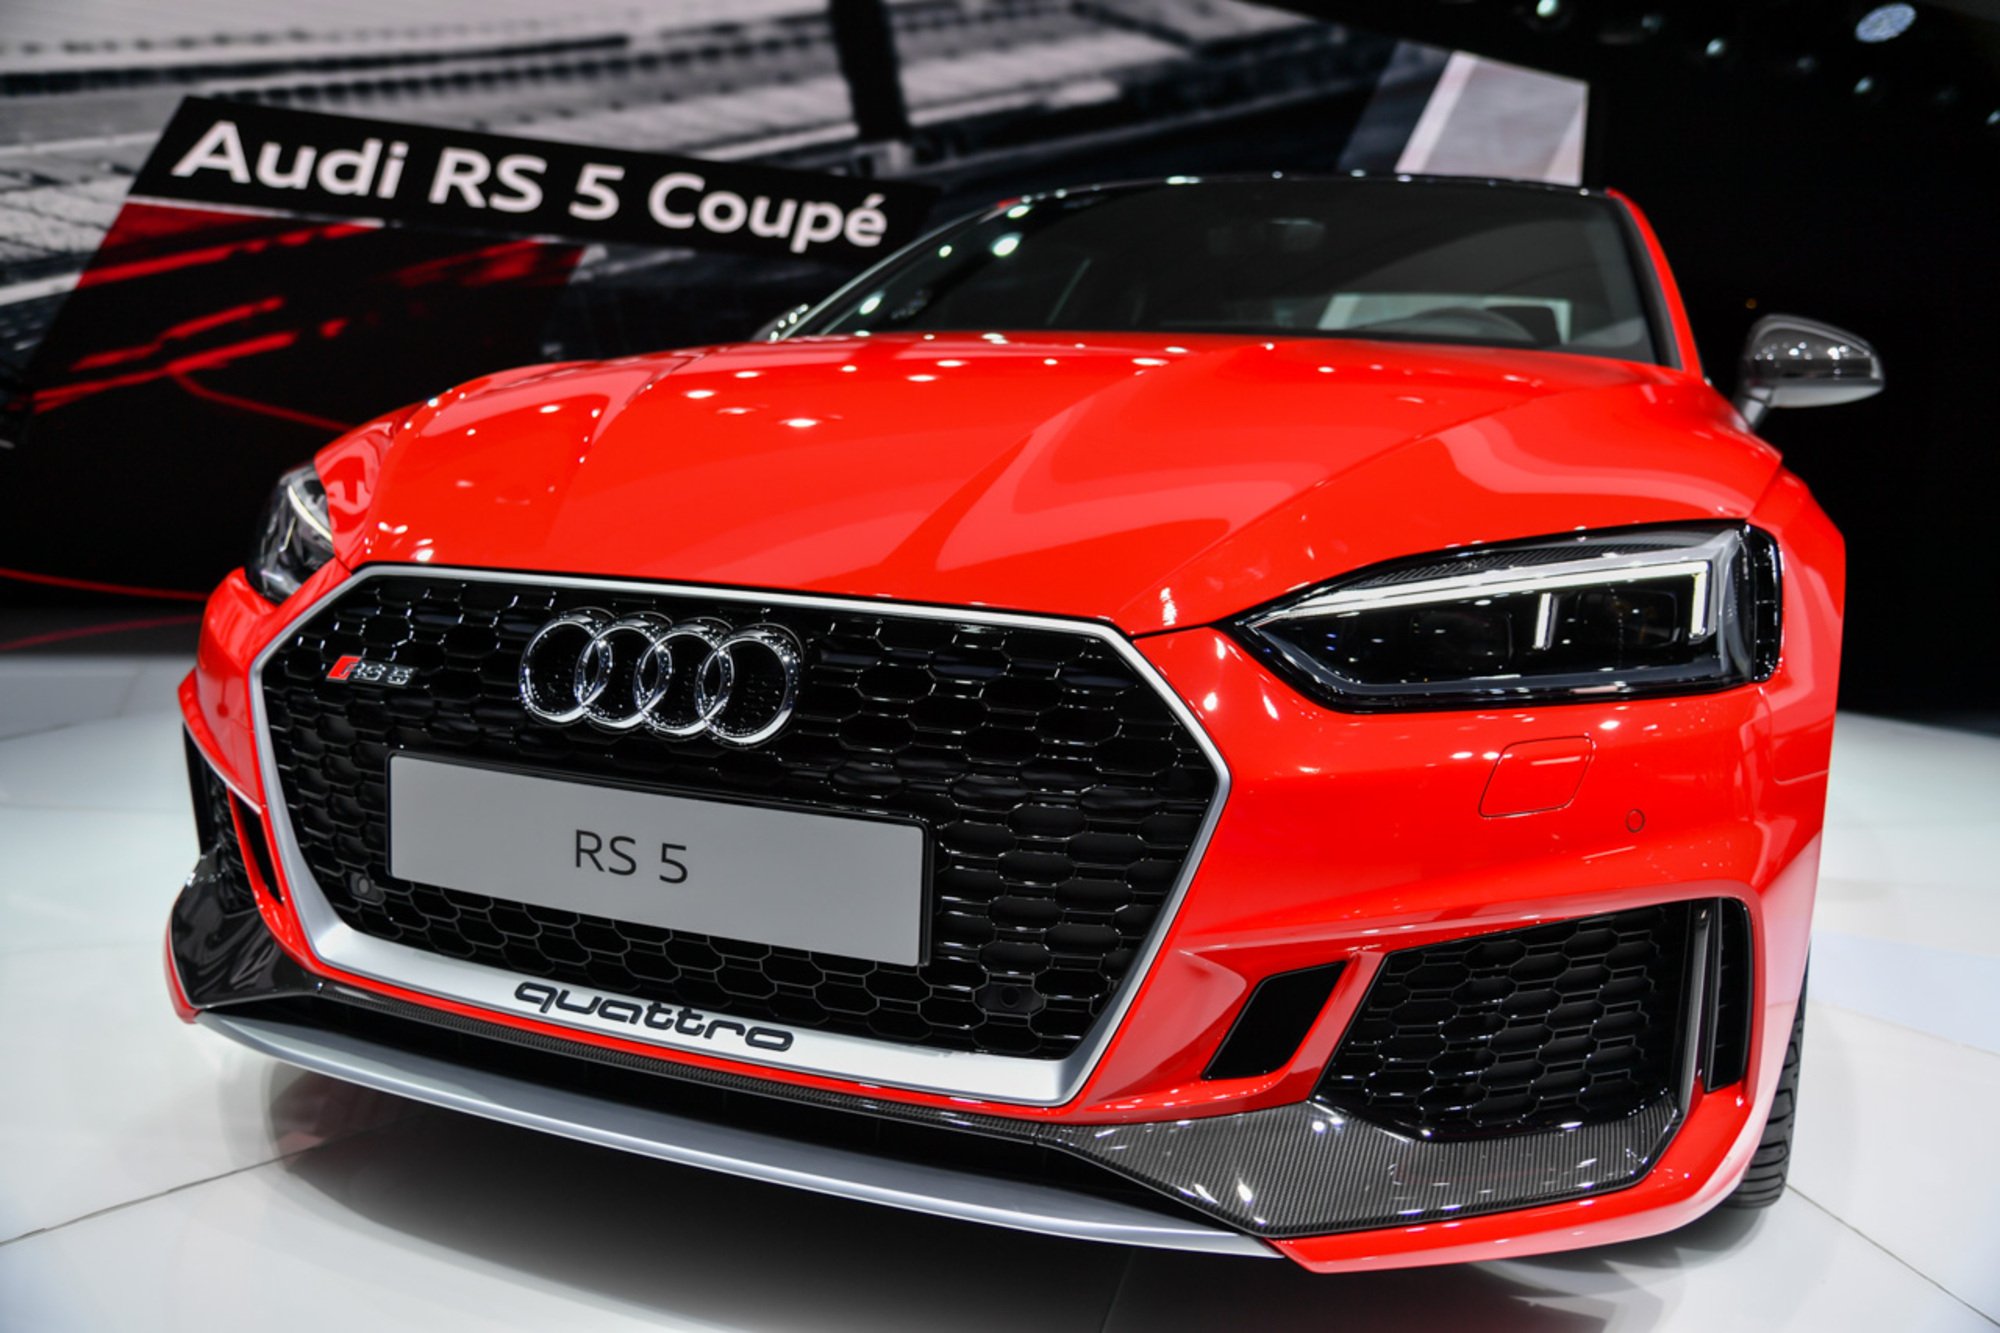 Nuova Audi RS5 Coup&eacute;, la videorecensione al Salone di Ginevra 2017 [Video]